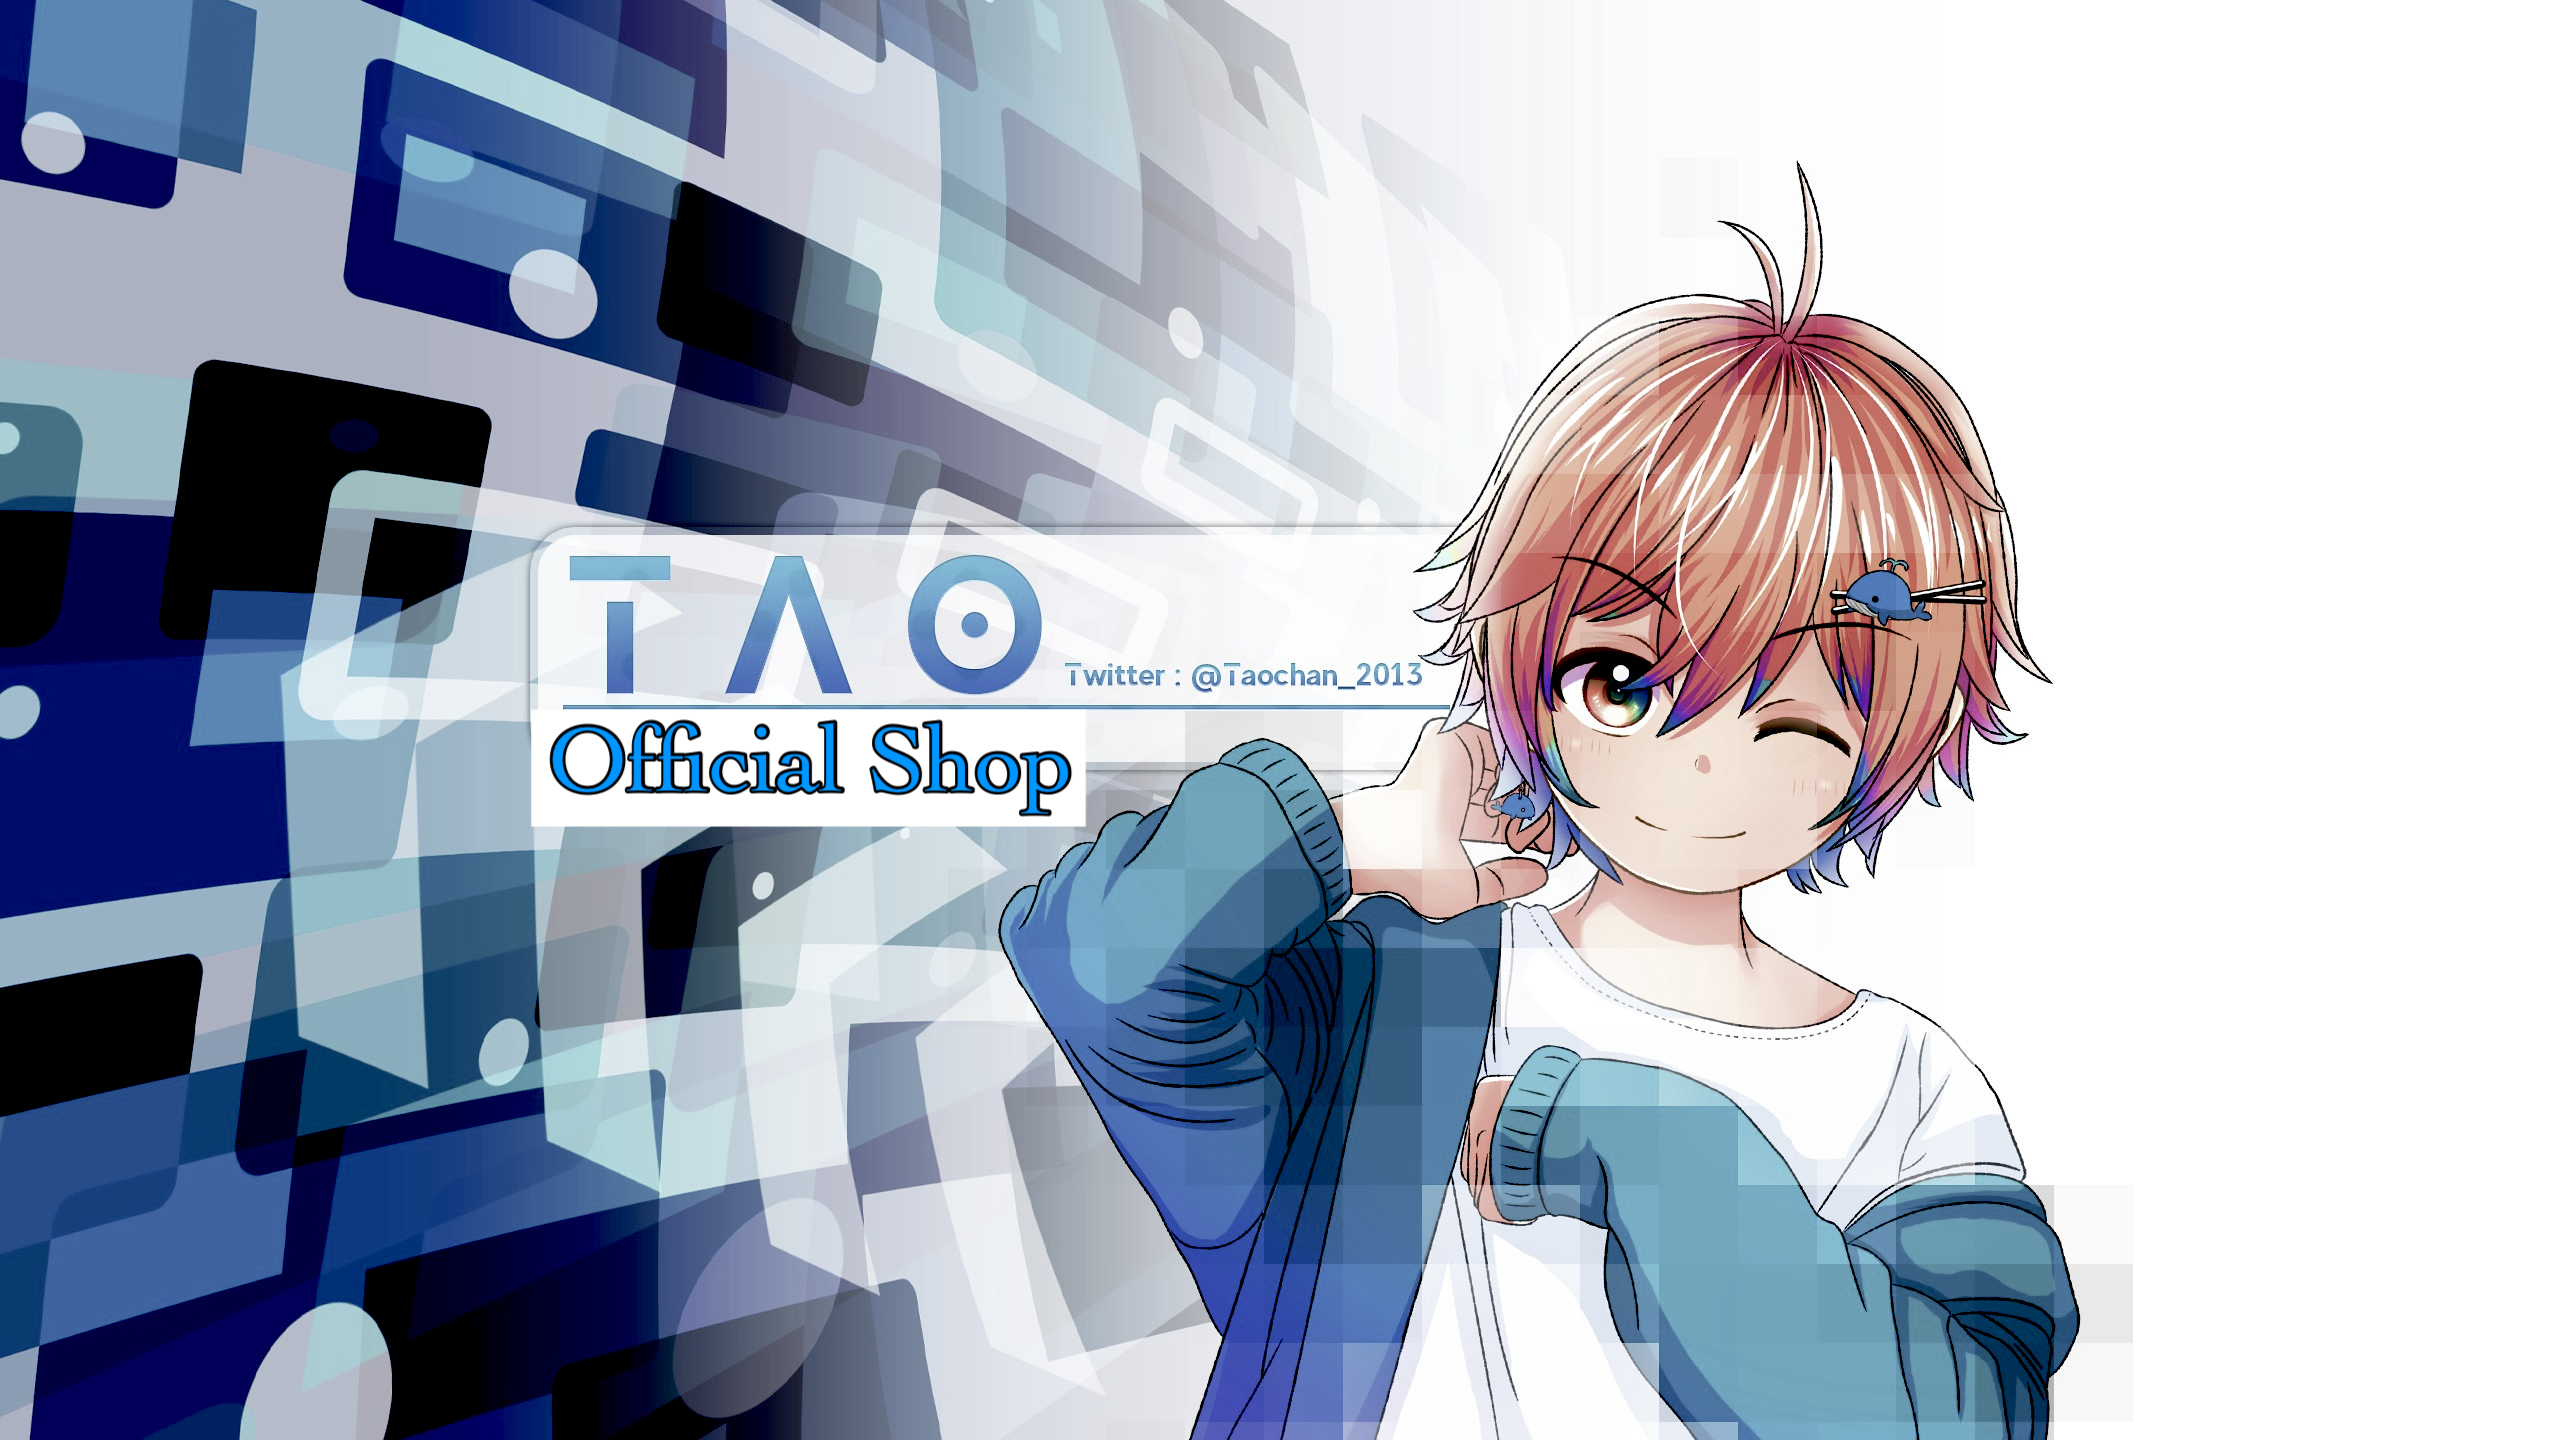 Tao Shop